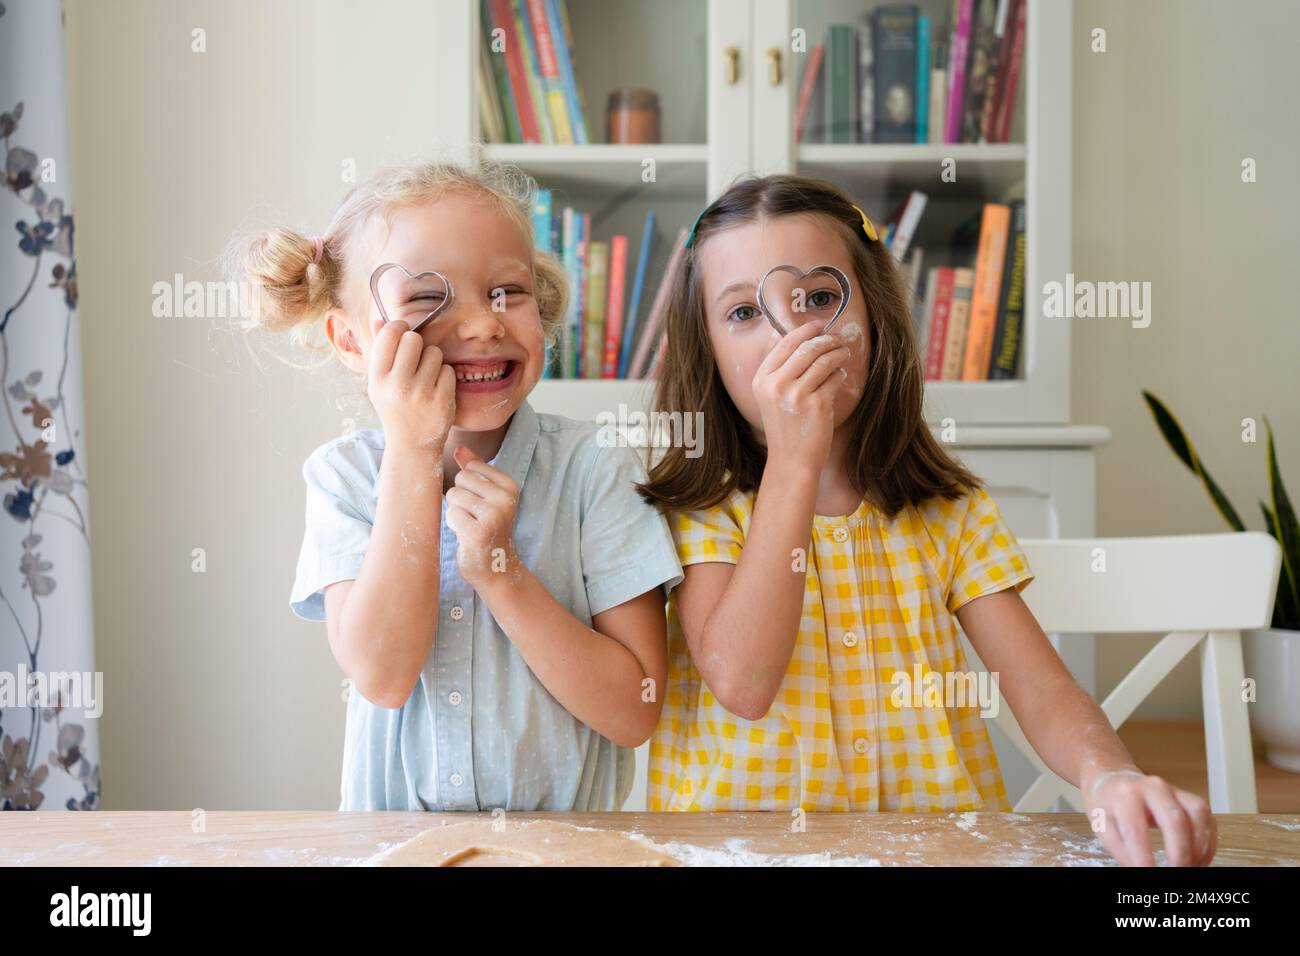 Mädchen, die zu Hause durch einen herzförmigen Keksschneider schauen Stockfoto